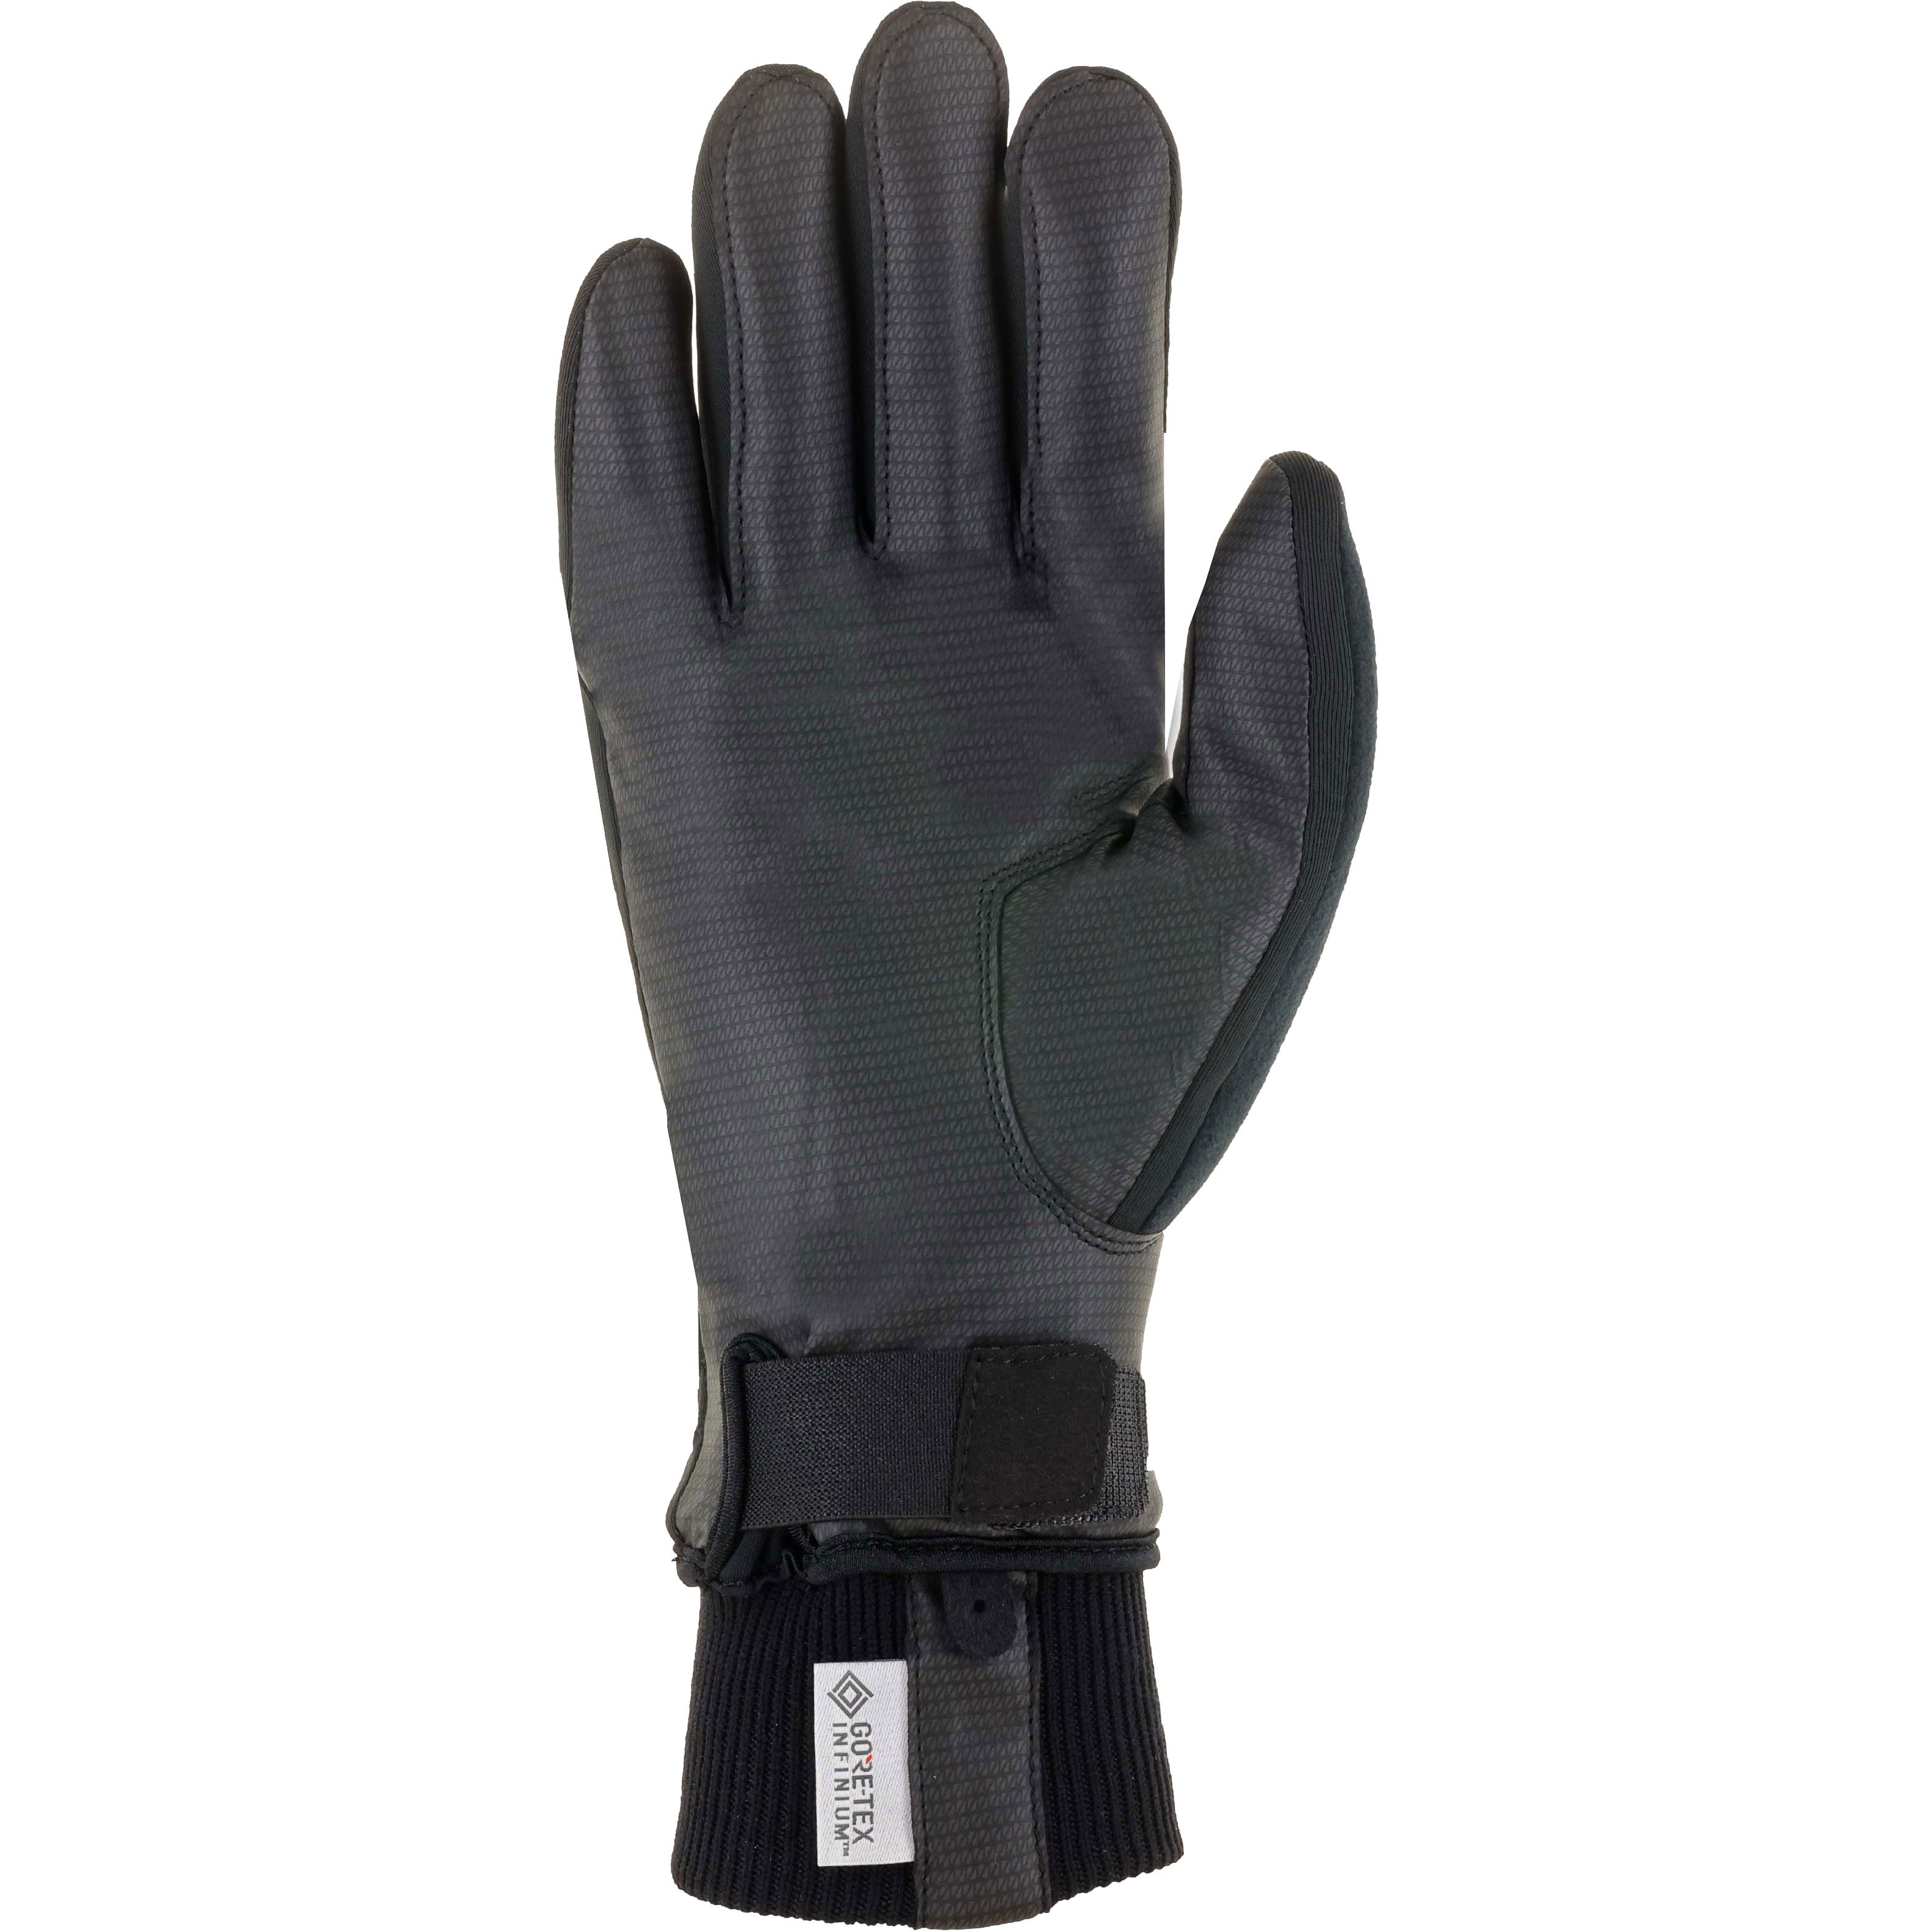 Roeckl Sports - Tesero Handschuhe schwarz kaufen im Sport Bittl Shop